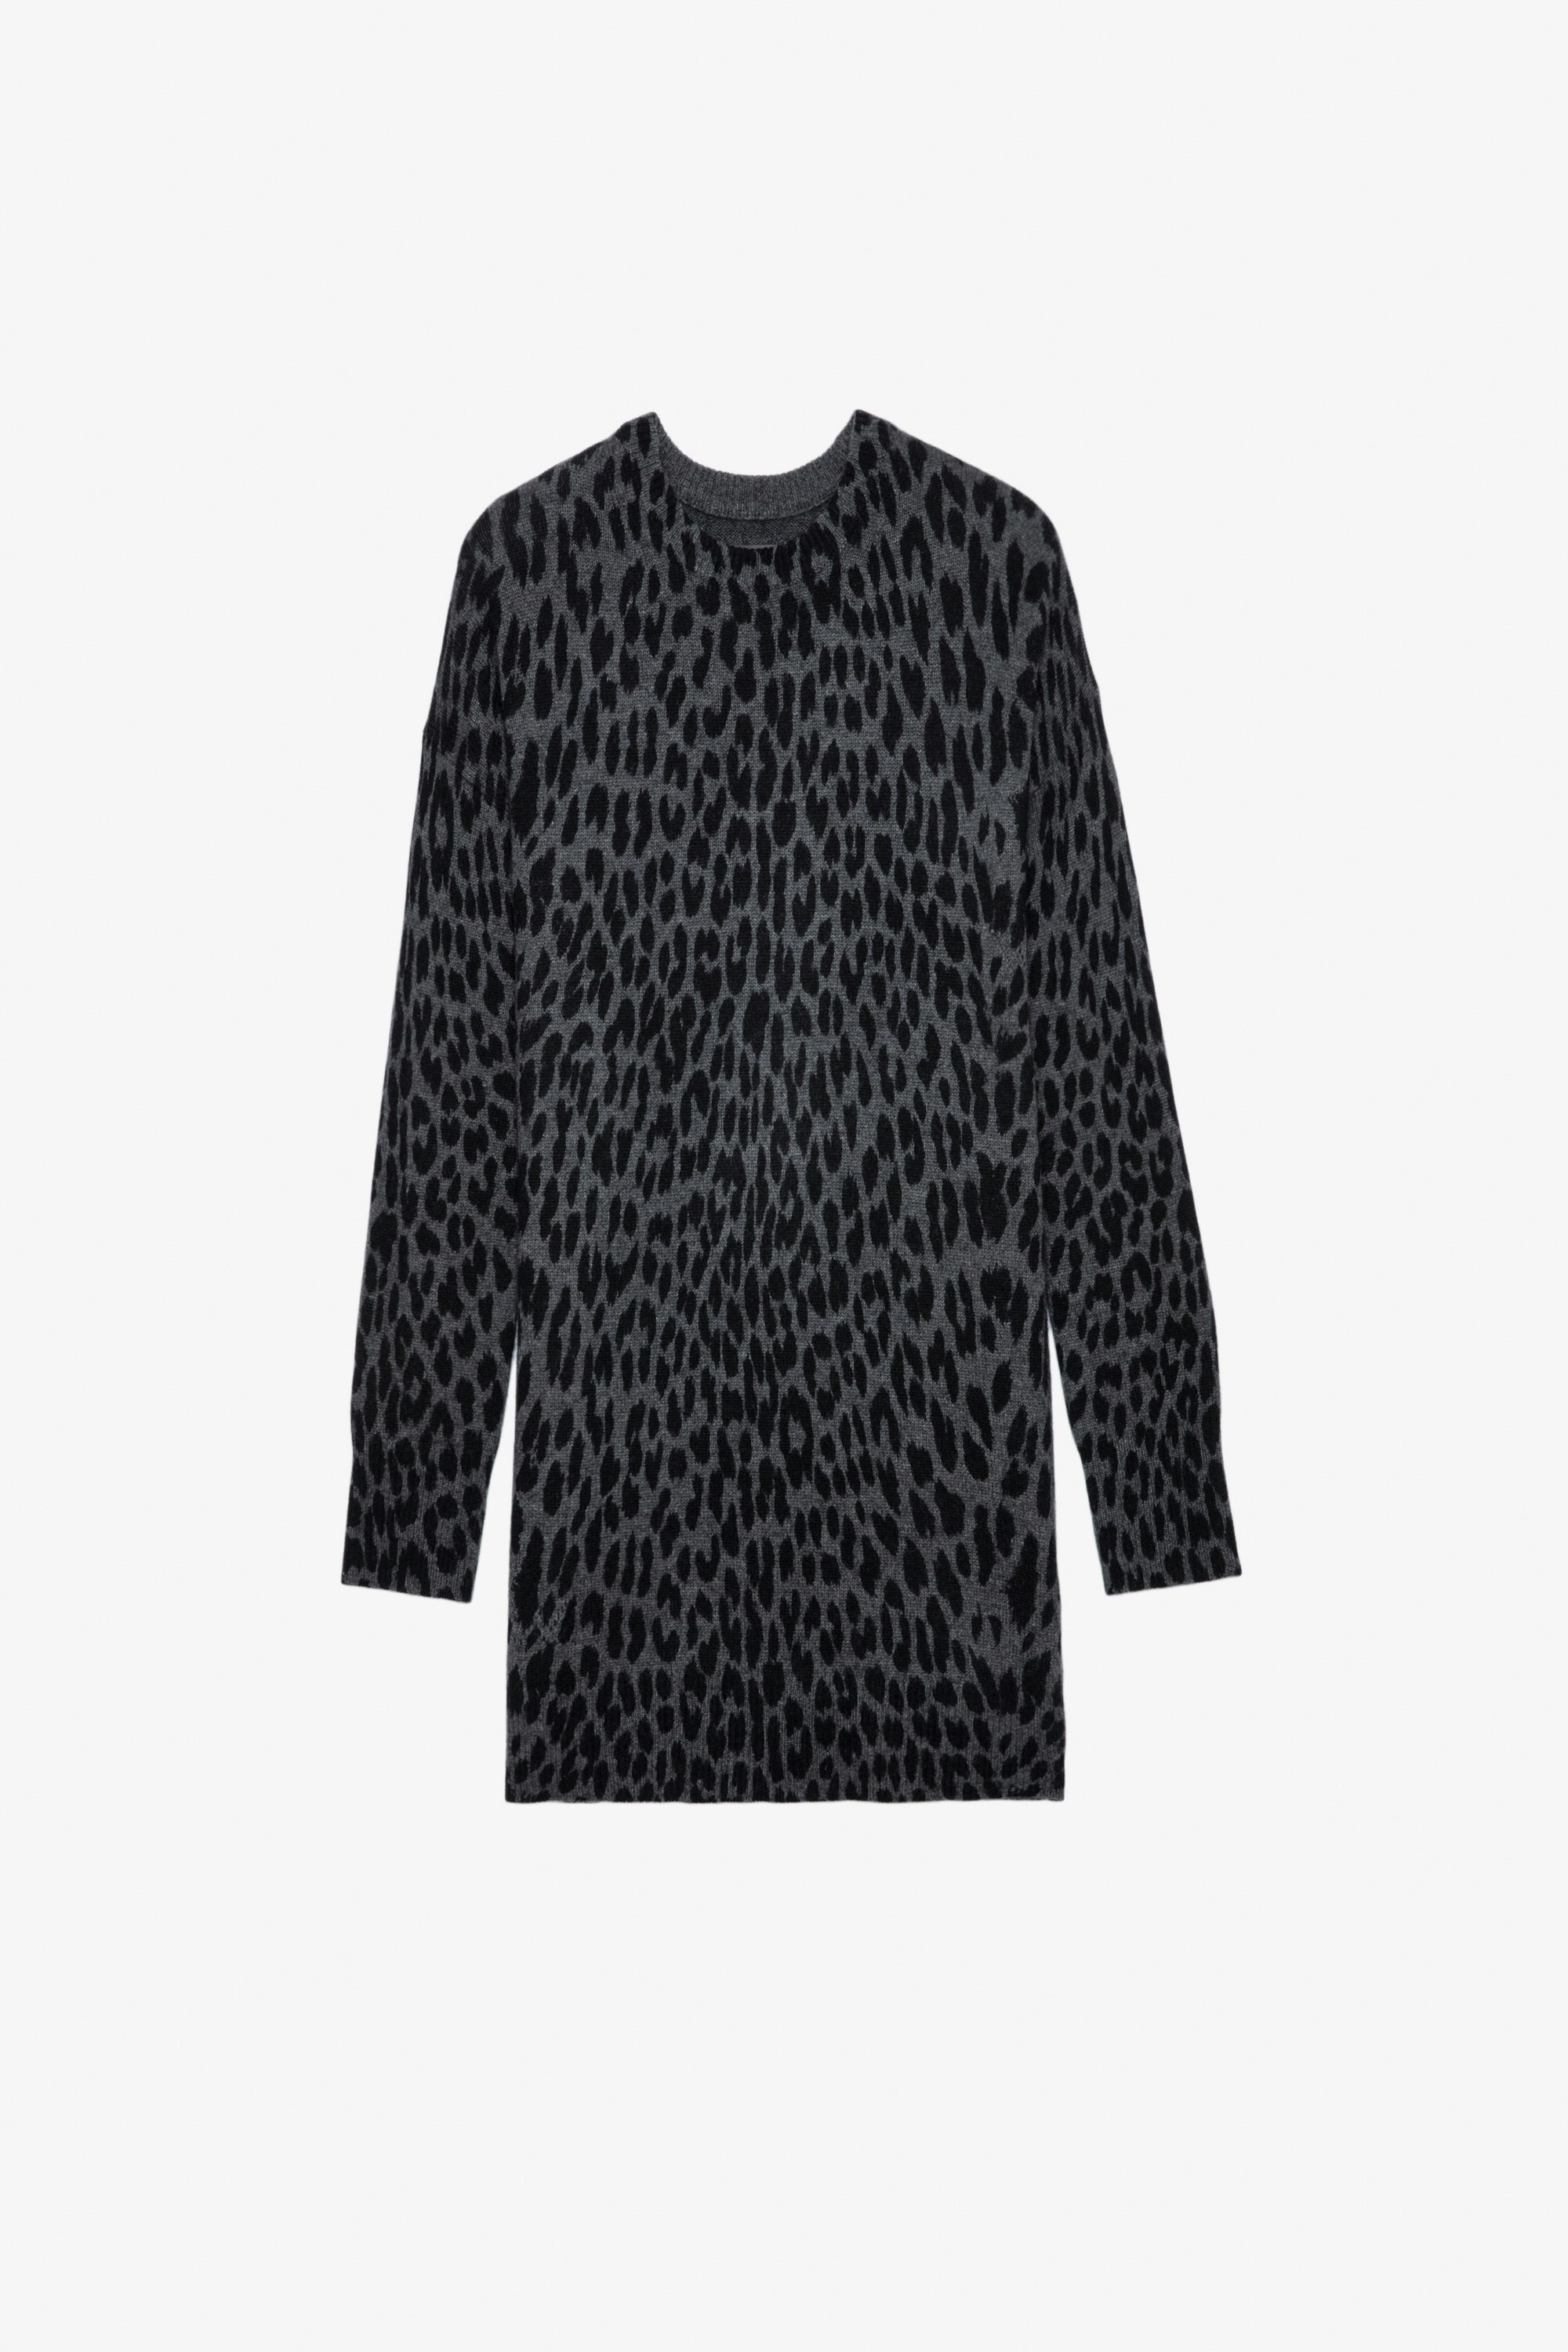 Vestido de cachemira con efecto leopardo Malia Vestido corto gris de cachemira con estampado de leopardo para mujer.